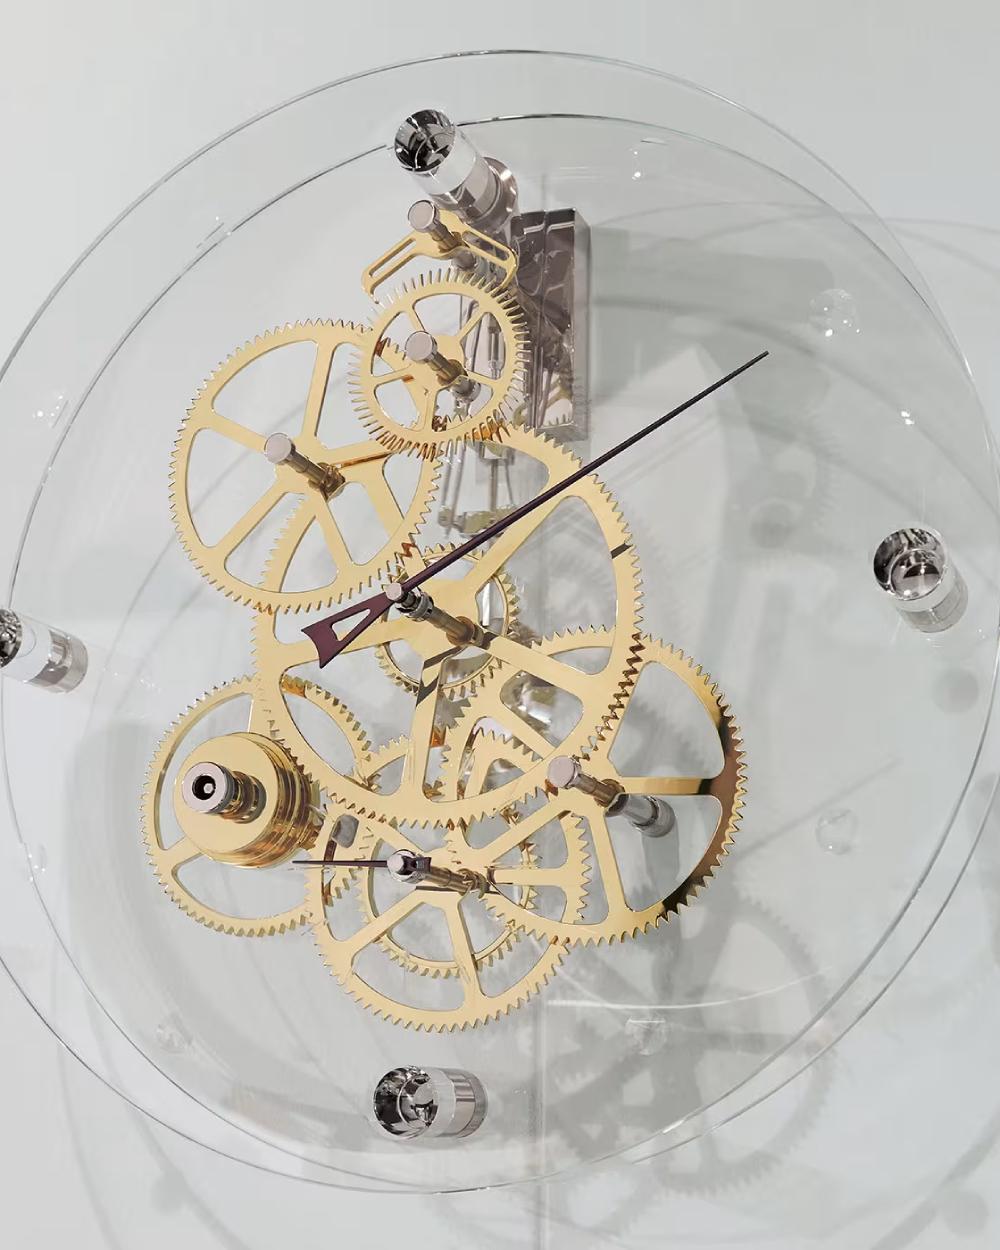 L'horloge murale à balancier Presto, conçue par Gianfranco Barban pour Teckell, fait partie de la collection de garde-temps Takto. Ce magnifique garde-temps est la définition moderne du temps. L'échappement Graham est visible à l'intérieur des deux